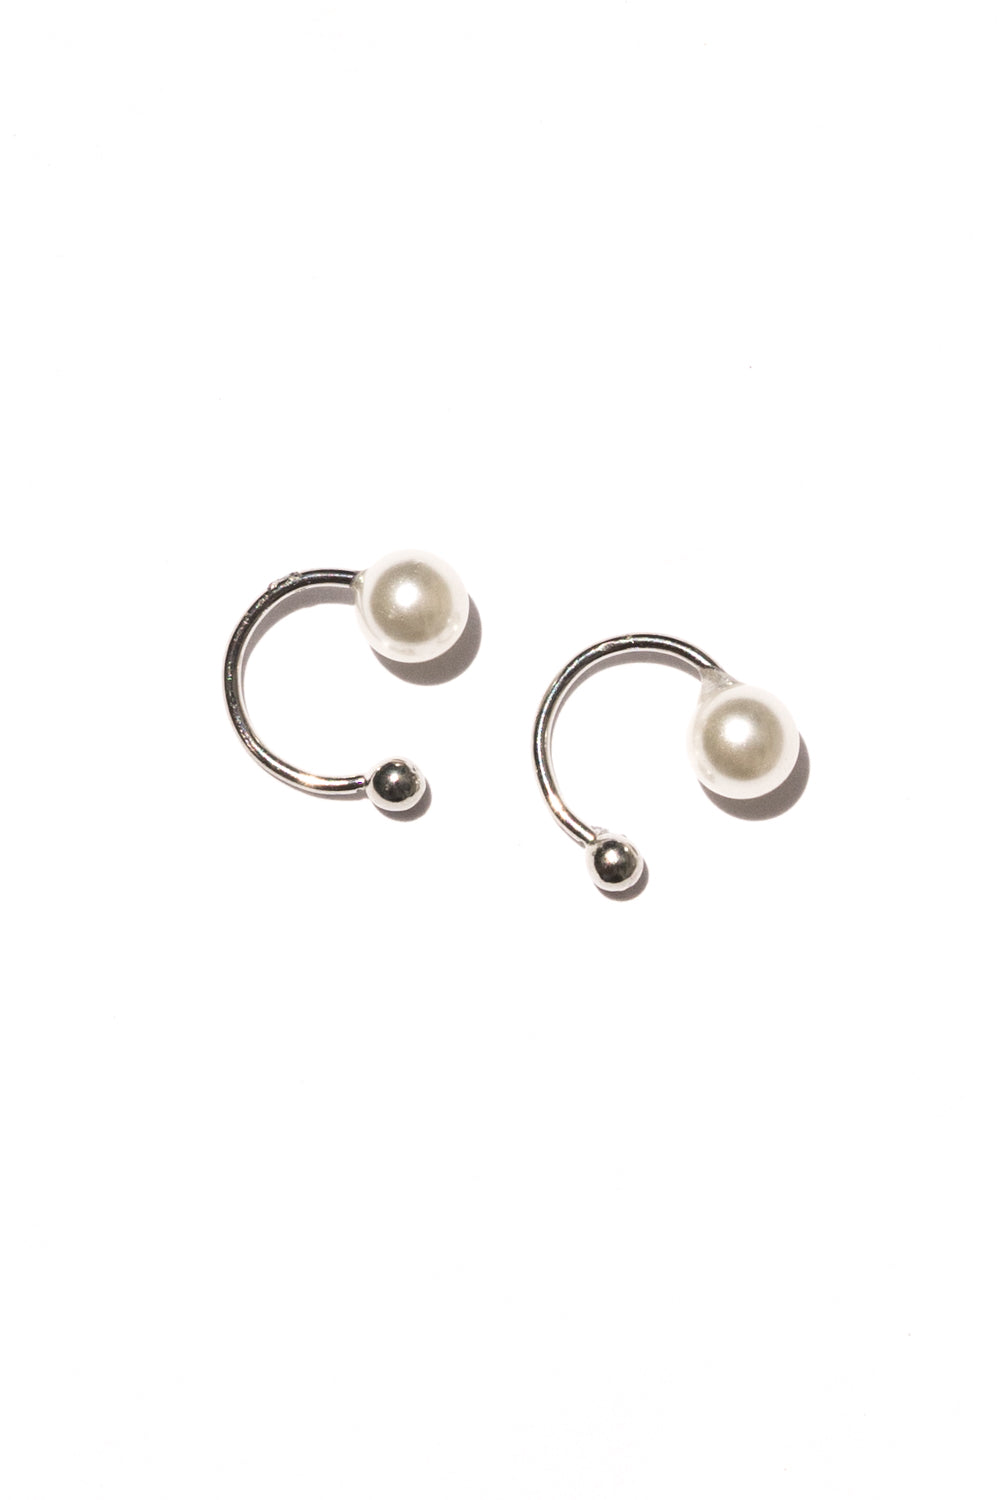 silver pearl ear cuff earrings